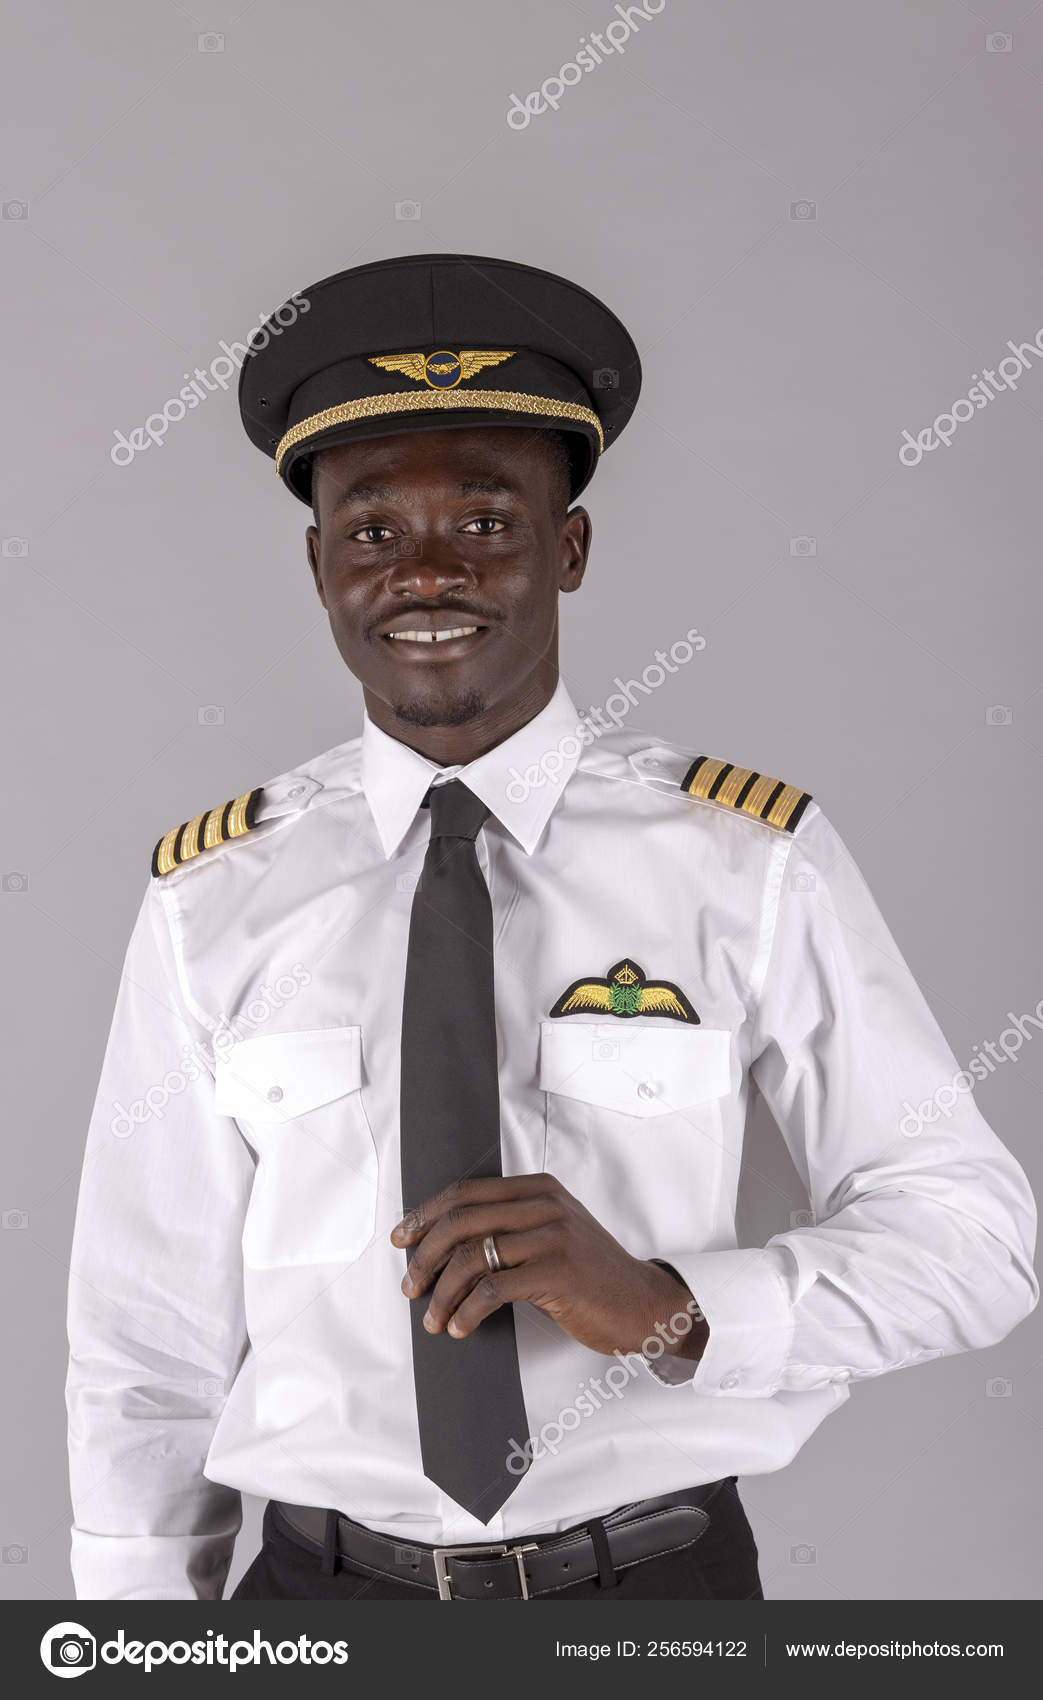 Harden Ja Tilpasning Portrait Young Airline Pilot Wearing Captain's Uniform Stock Photo by  ©petertt 256594122